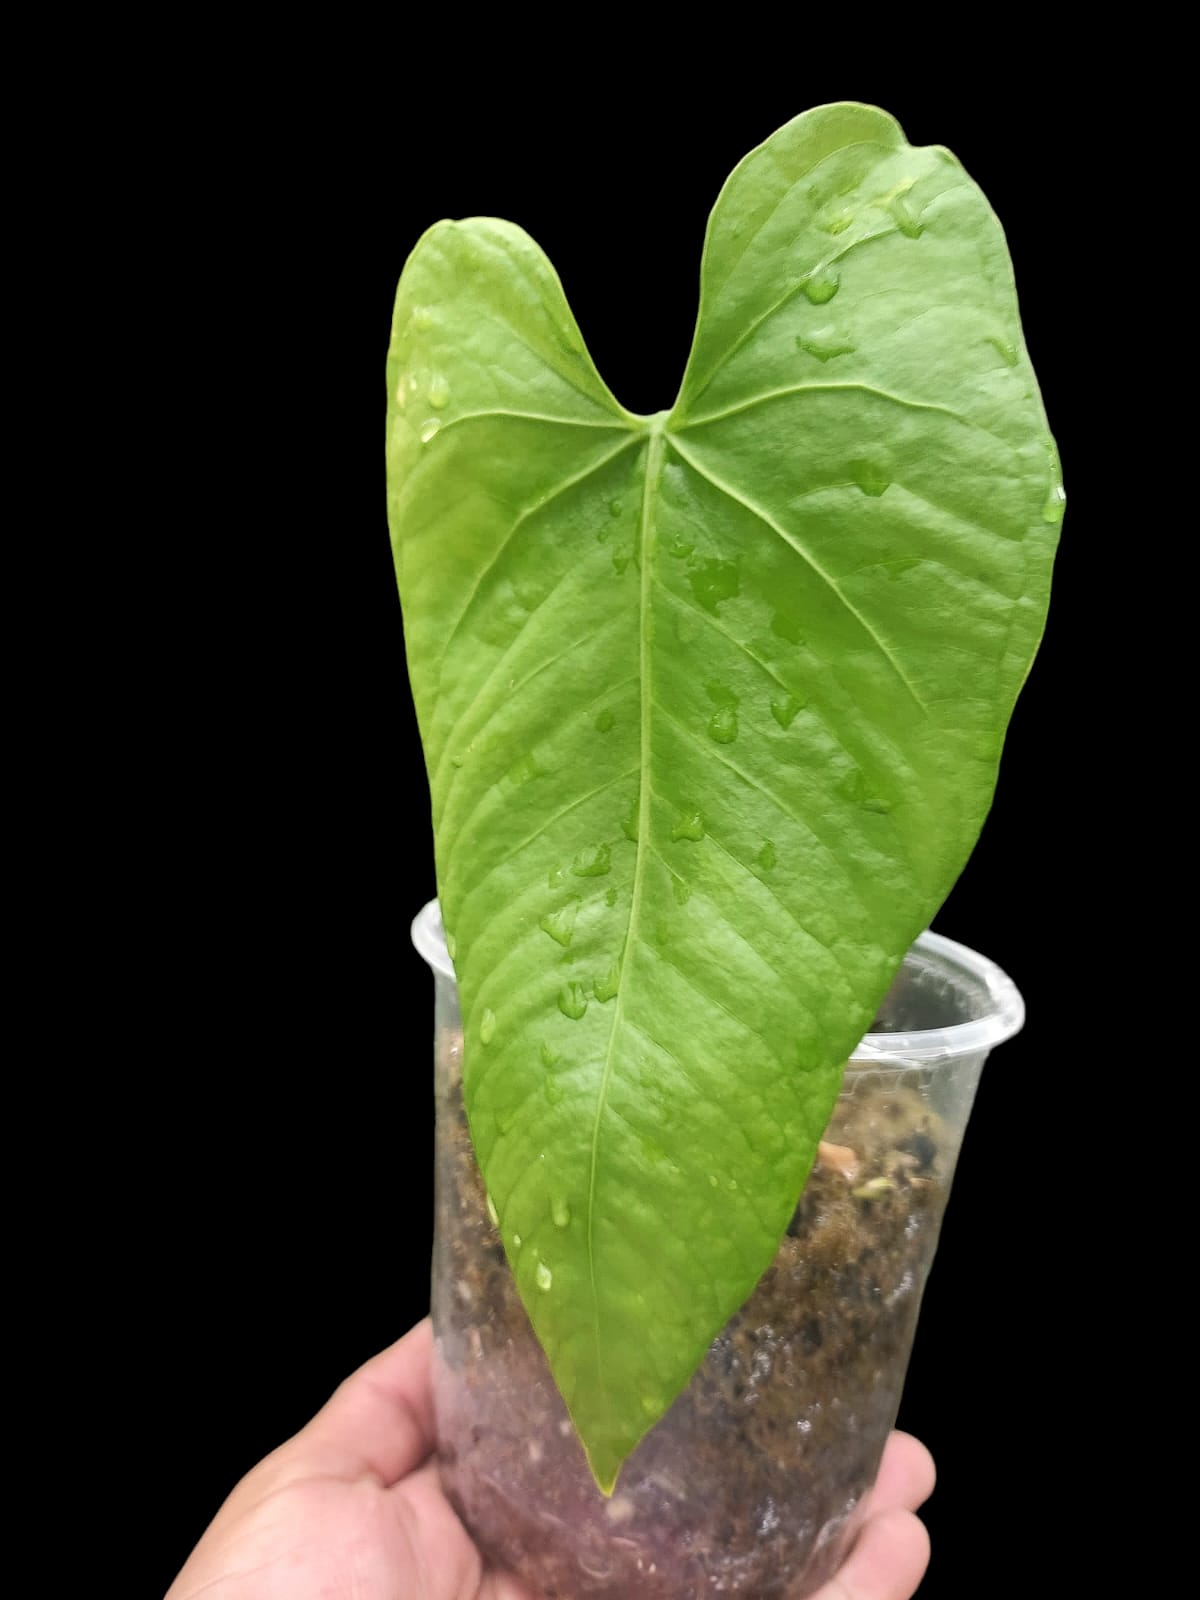 Anthurium sp. "Cachiyacu" (EXACT PLANT)